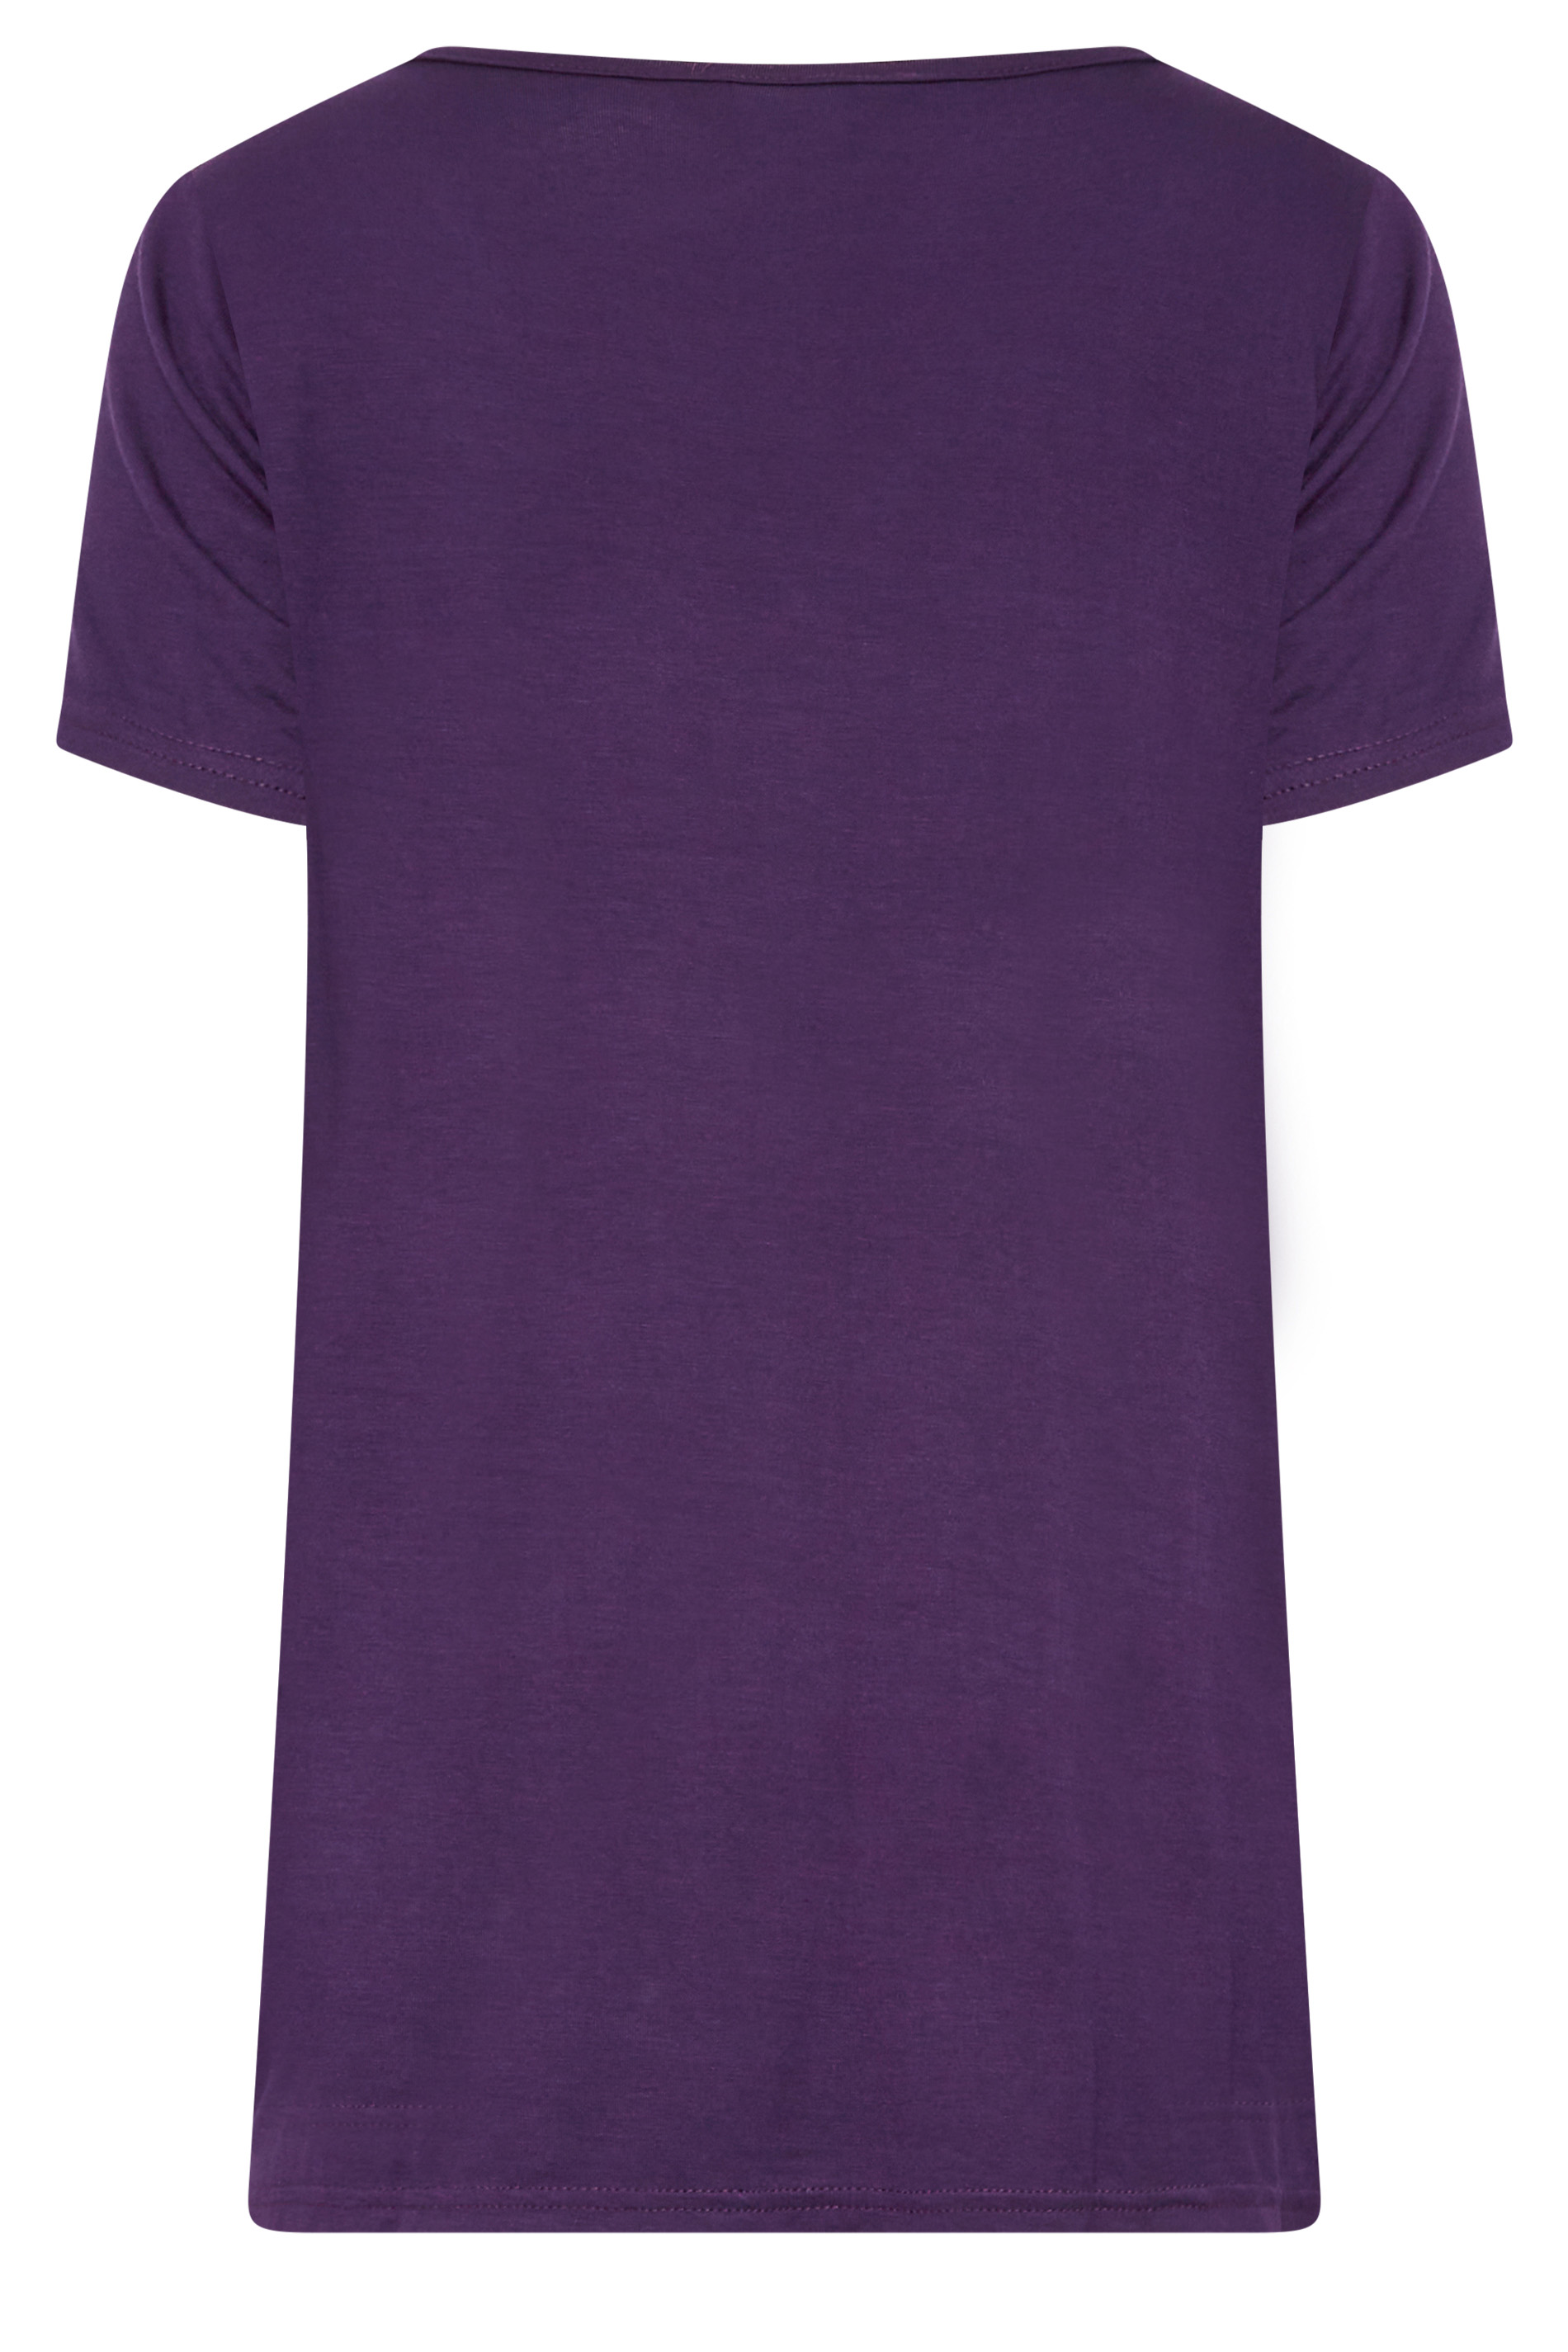 LTS Tall Women's Dark Purple V-Neck T-Shirt